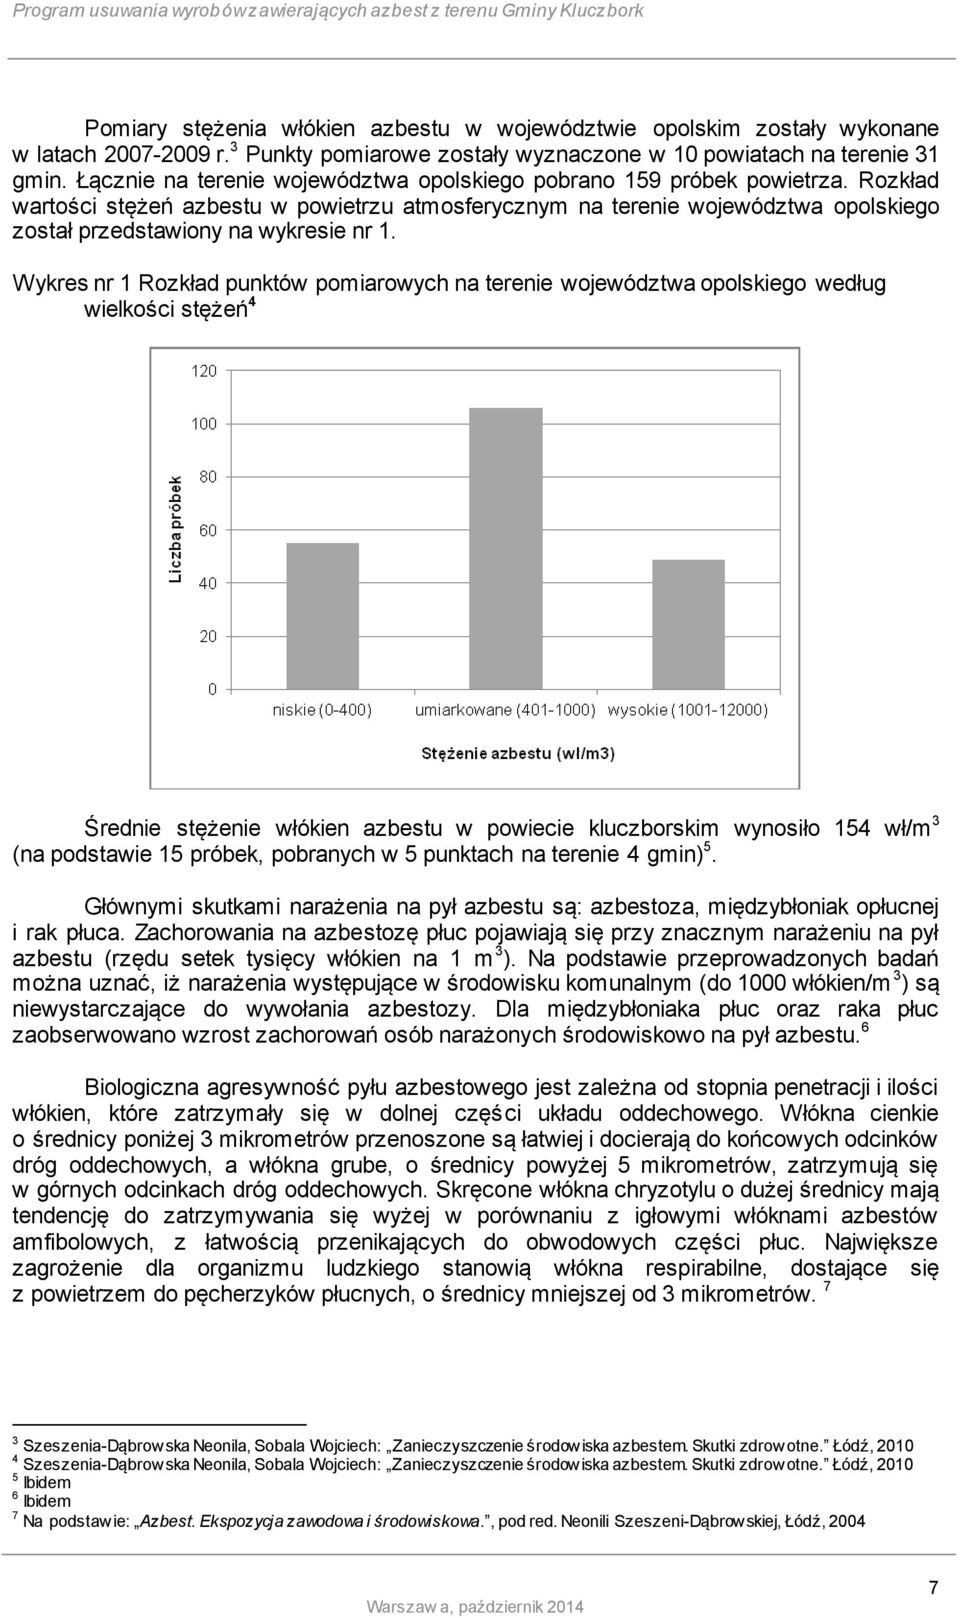 Rozkład wartości stężeń azbestu w powietrzu atmosferycznym na terenie województwa opolskiego został przedstawiony na wykresie nr 1.